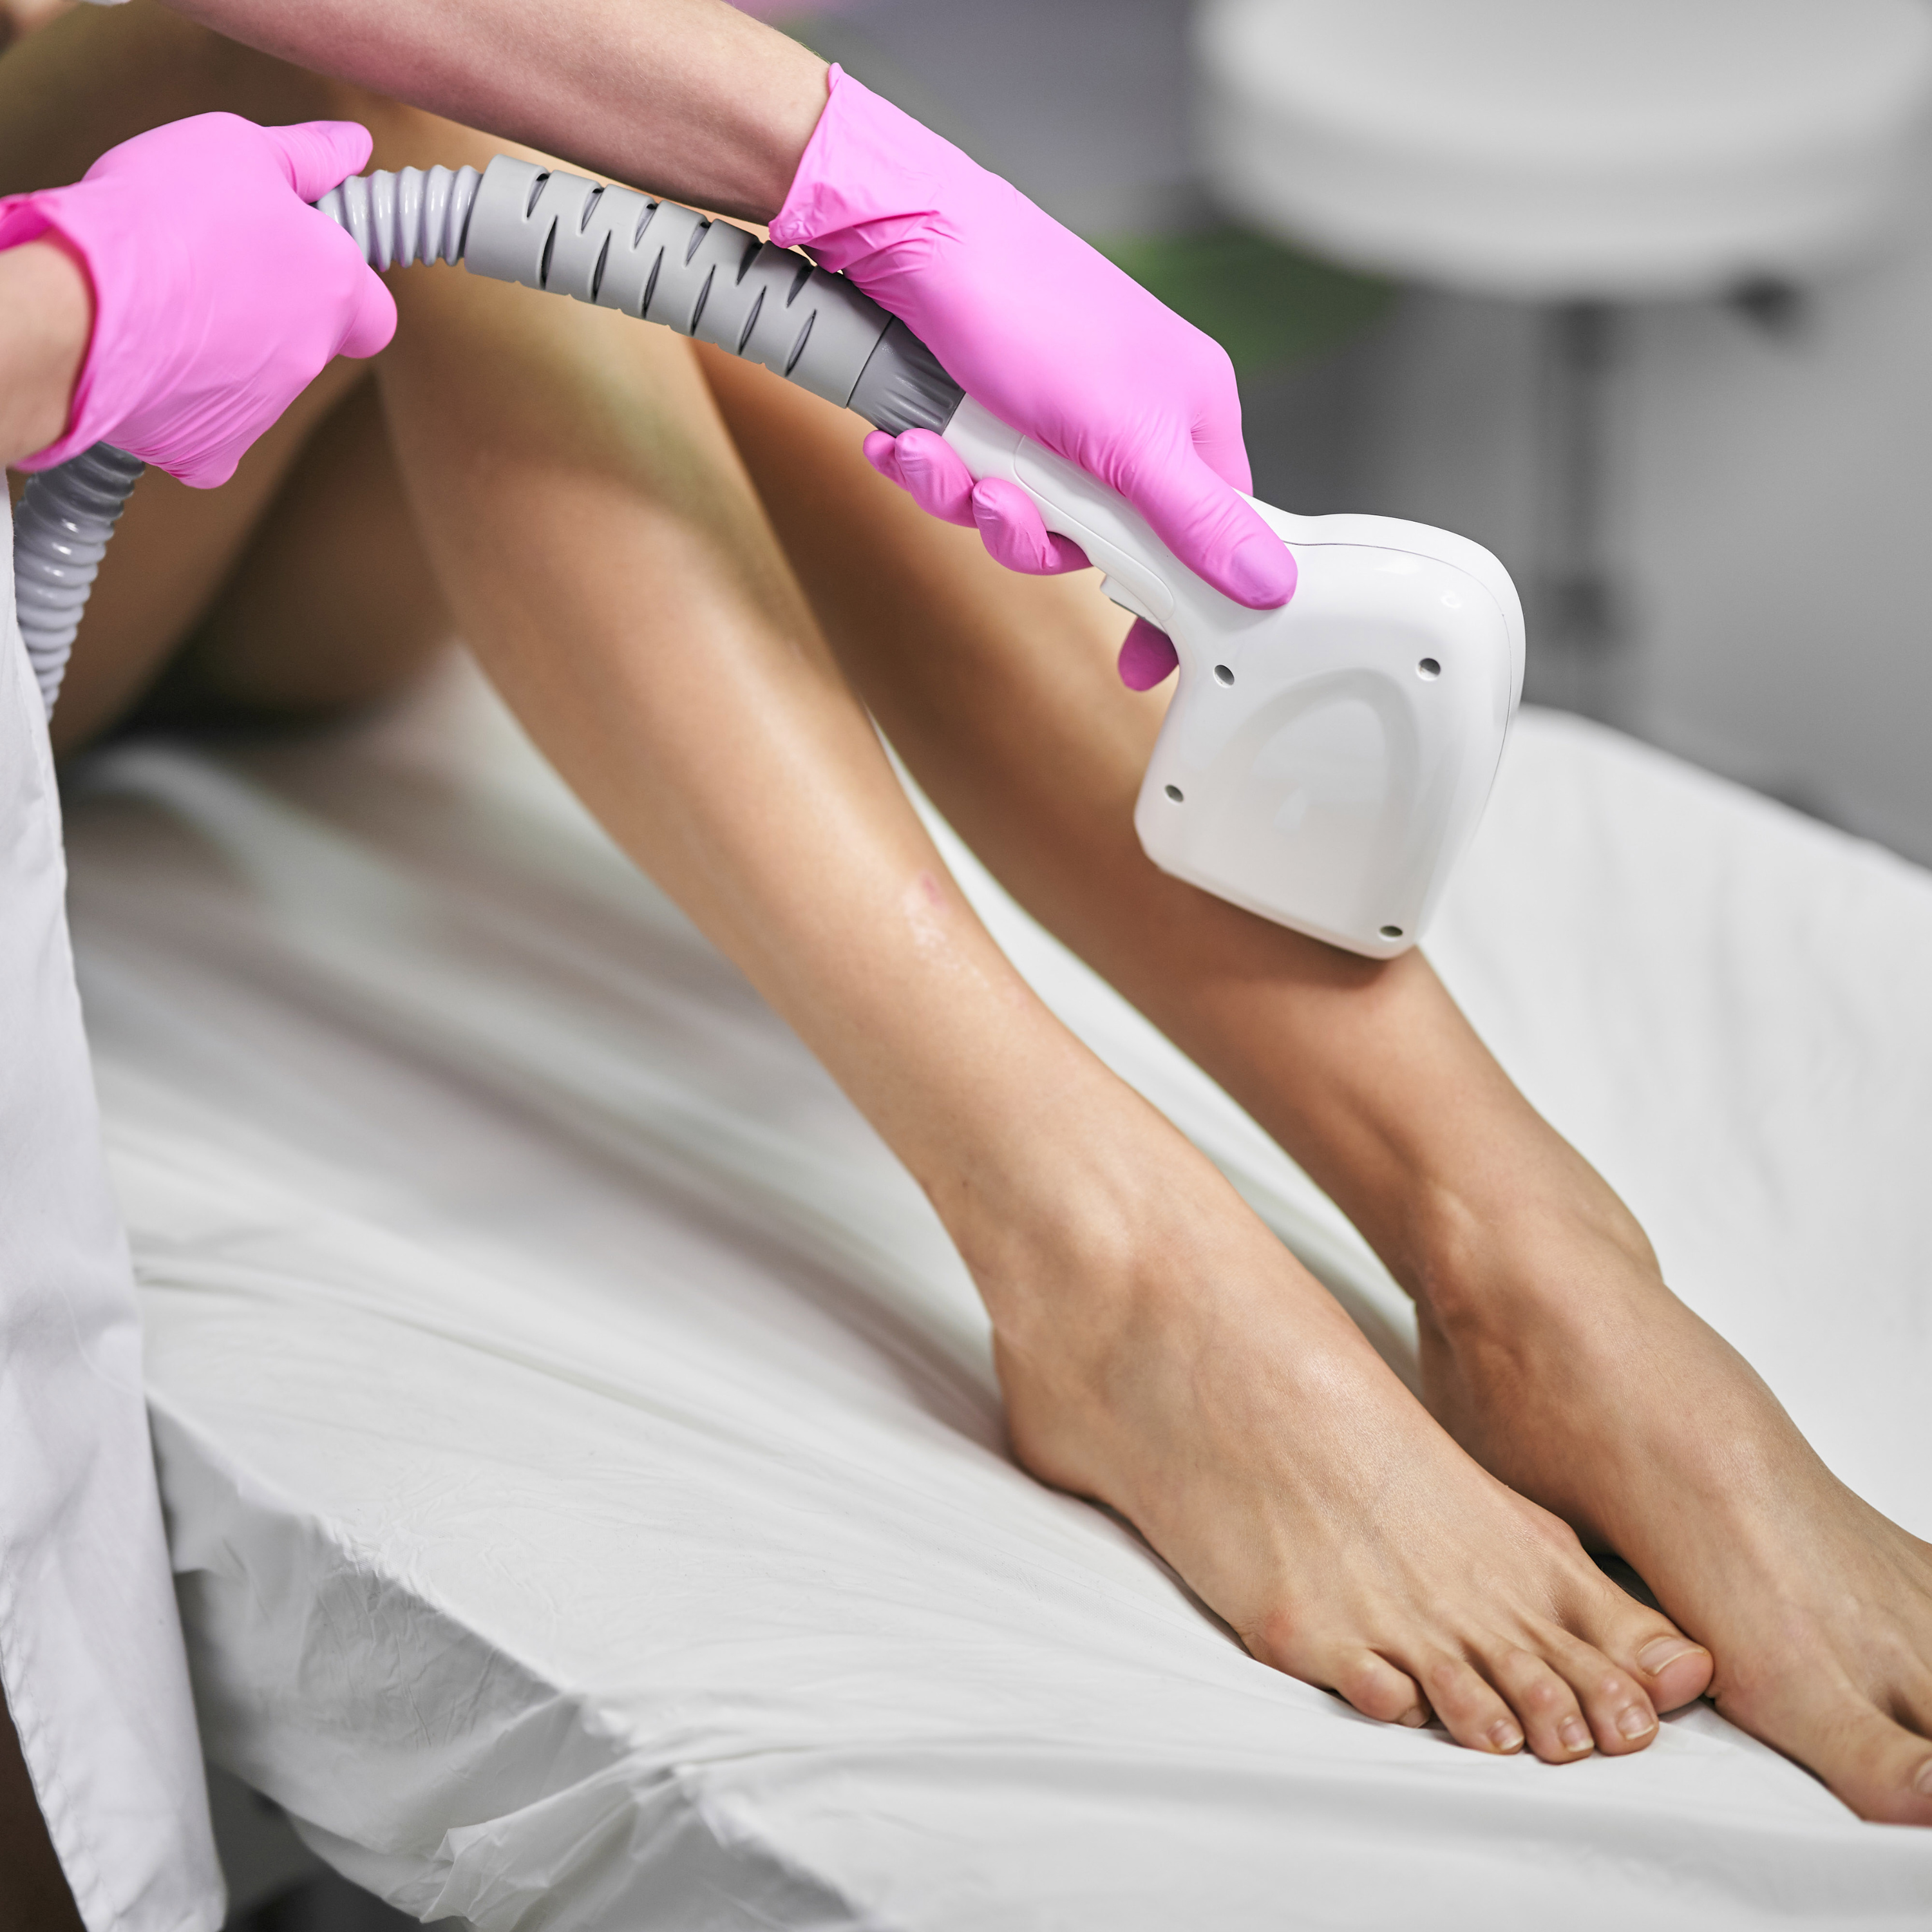 depilacja laserowa nóg w różowych rękawiczkach